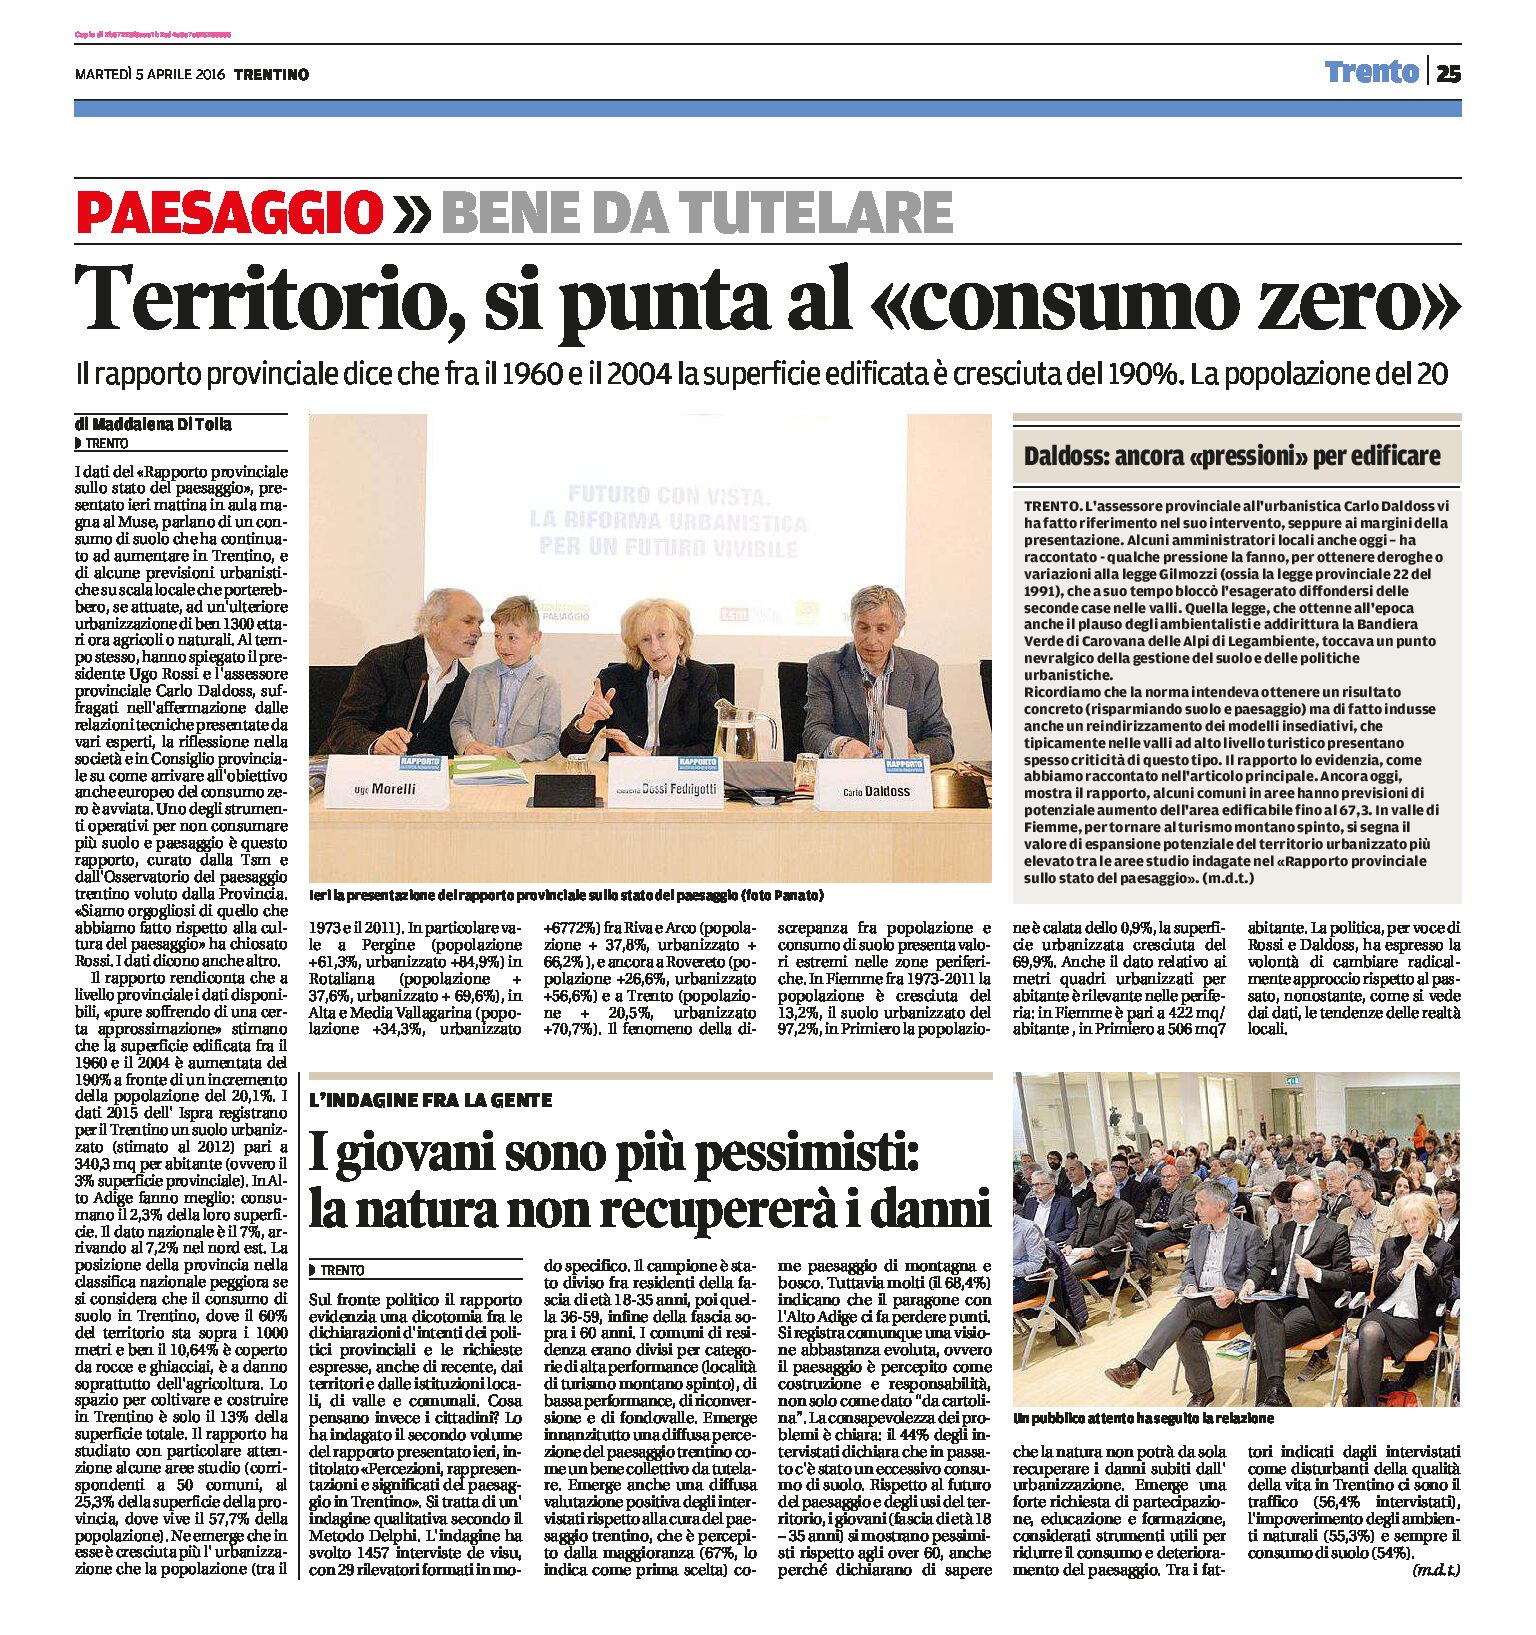 Trentino: territorio, si punta al “consumo zero”